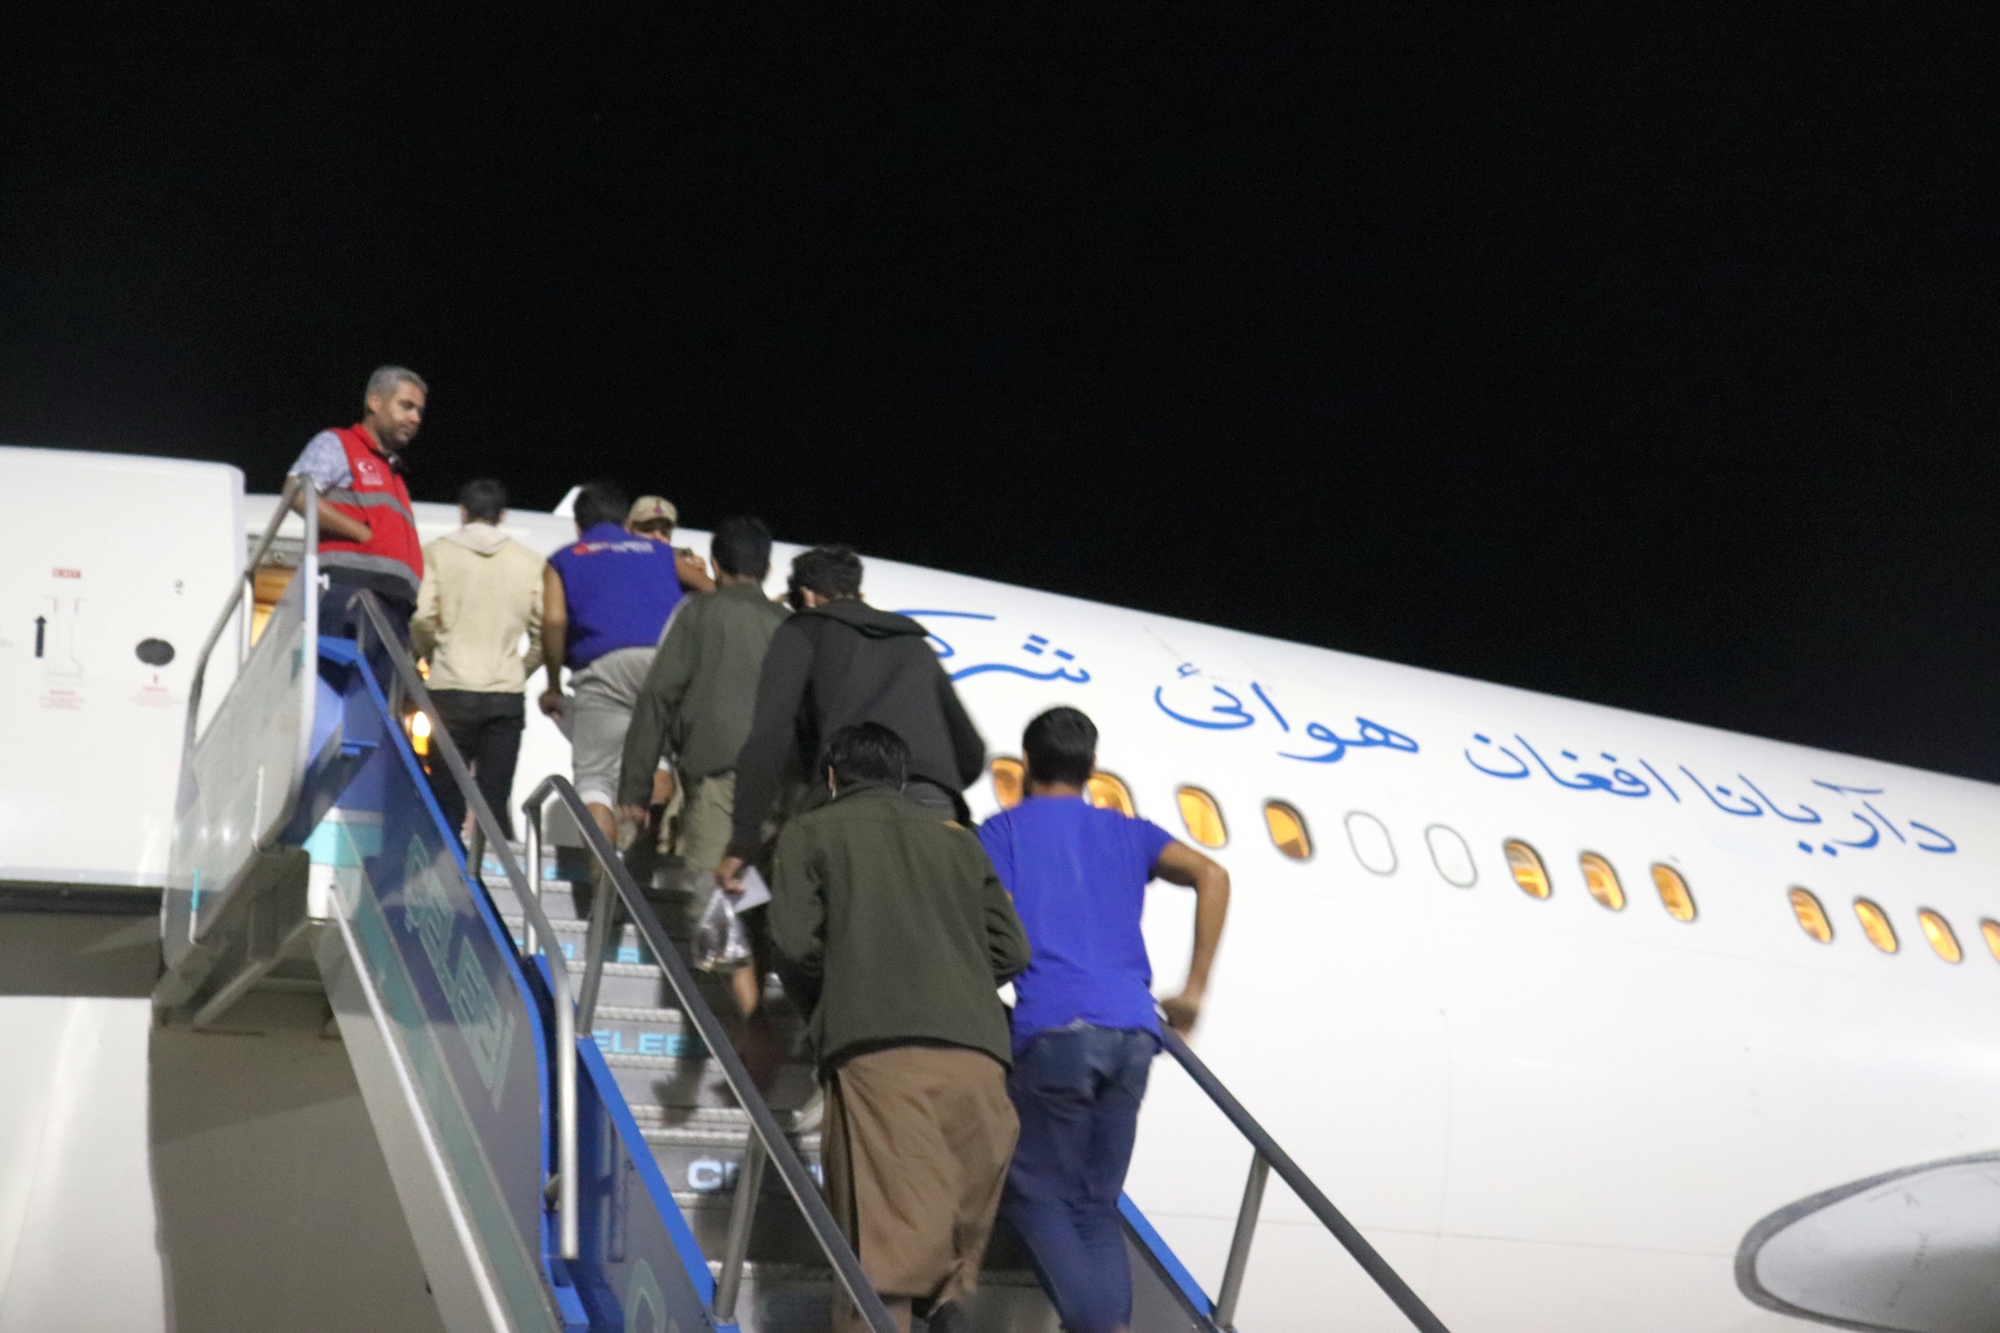 İçişleri Bakanlığı Göç İdaresi Başkanlığı’na bağlı Malatya’daki Geri Gönderme Merkezinde  227 düzensiz göçmen uçakla ülkesine gönderildi. Malatya’da 4 günde toplam 908 Afganistan uyruklu düzensiz göçmen uçak seferleriyle ülkesine gönderilecek.